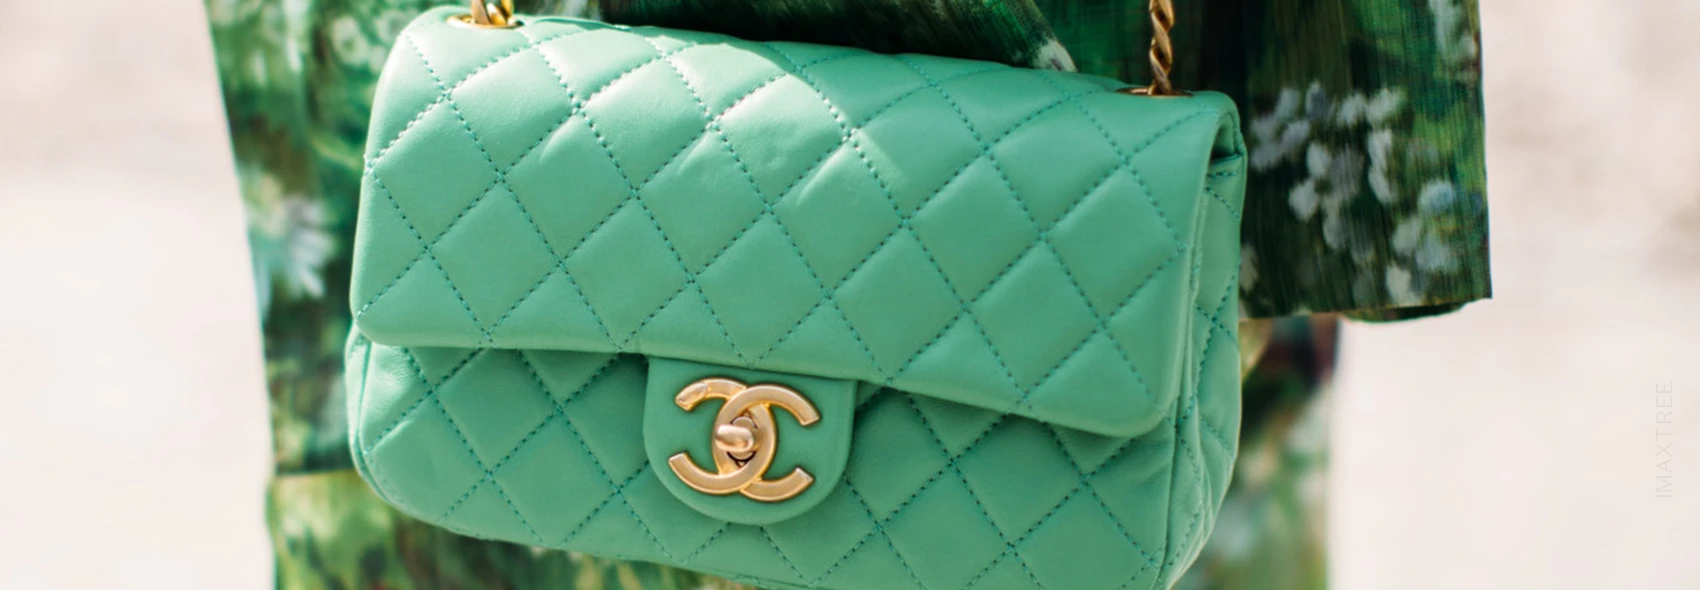 Le sac Chanel Classic Rabat : Ce qu'il faut prendre en compte avant d'acheter